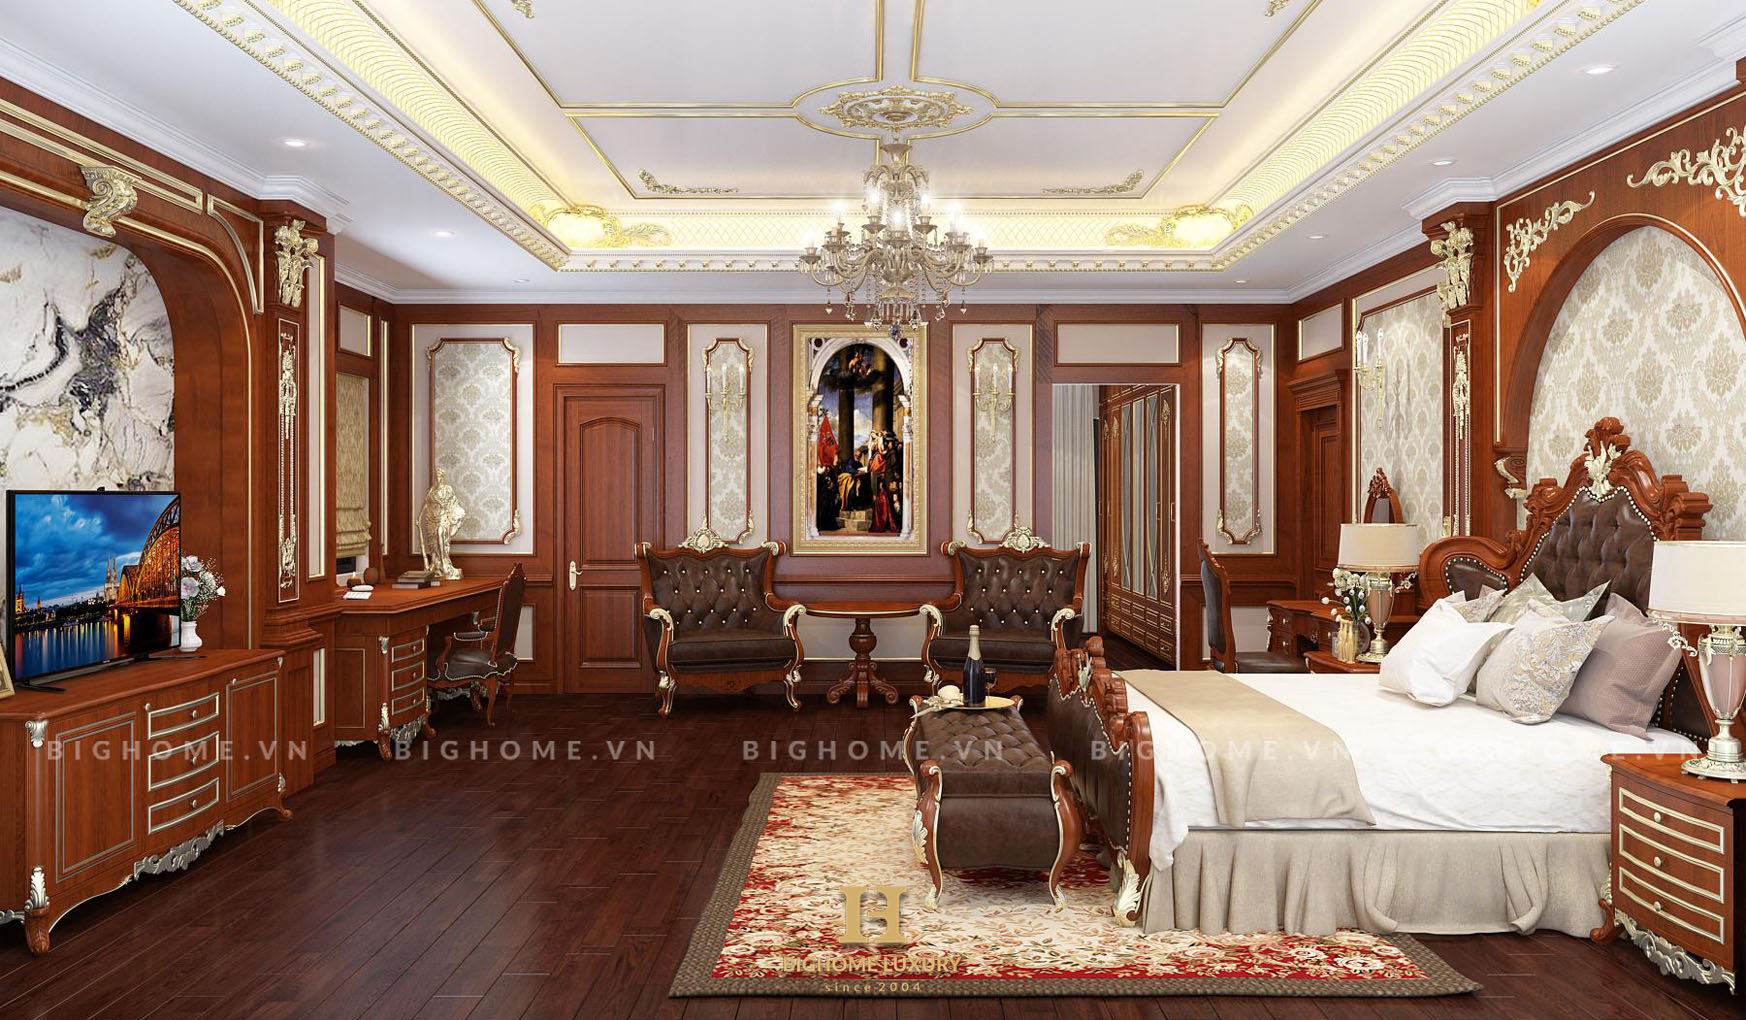 Thiết kế nội thất chuyên nghiệp biệt thự cổ điển nhà Anh Thanh